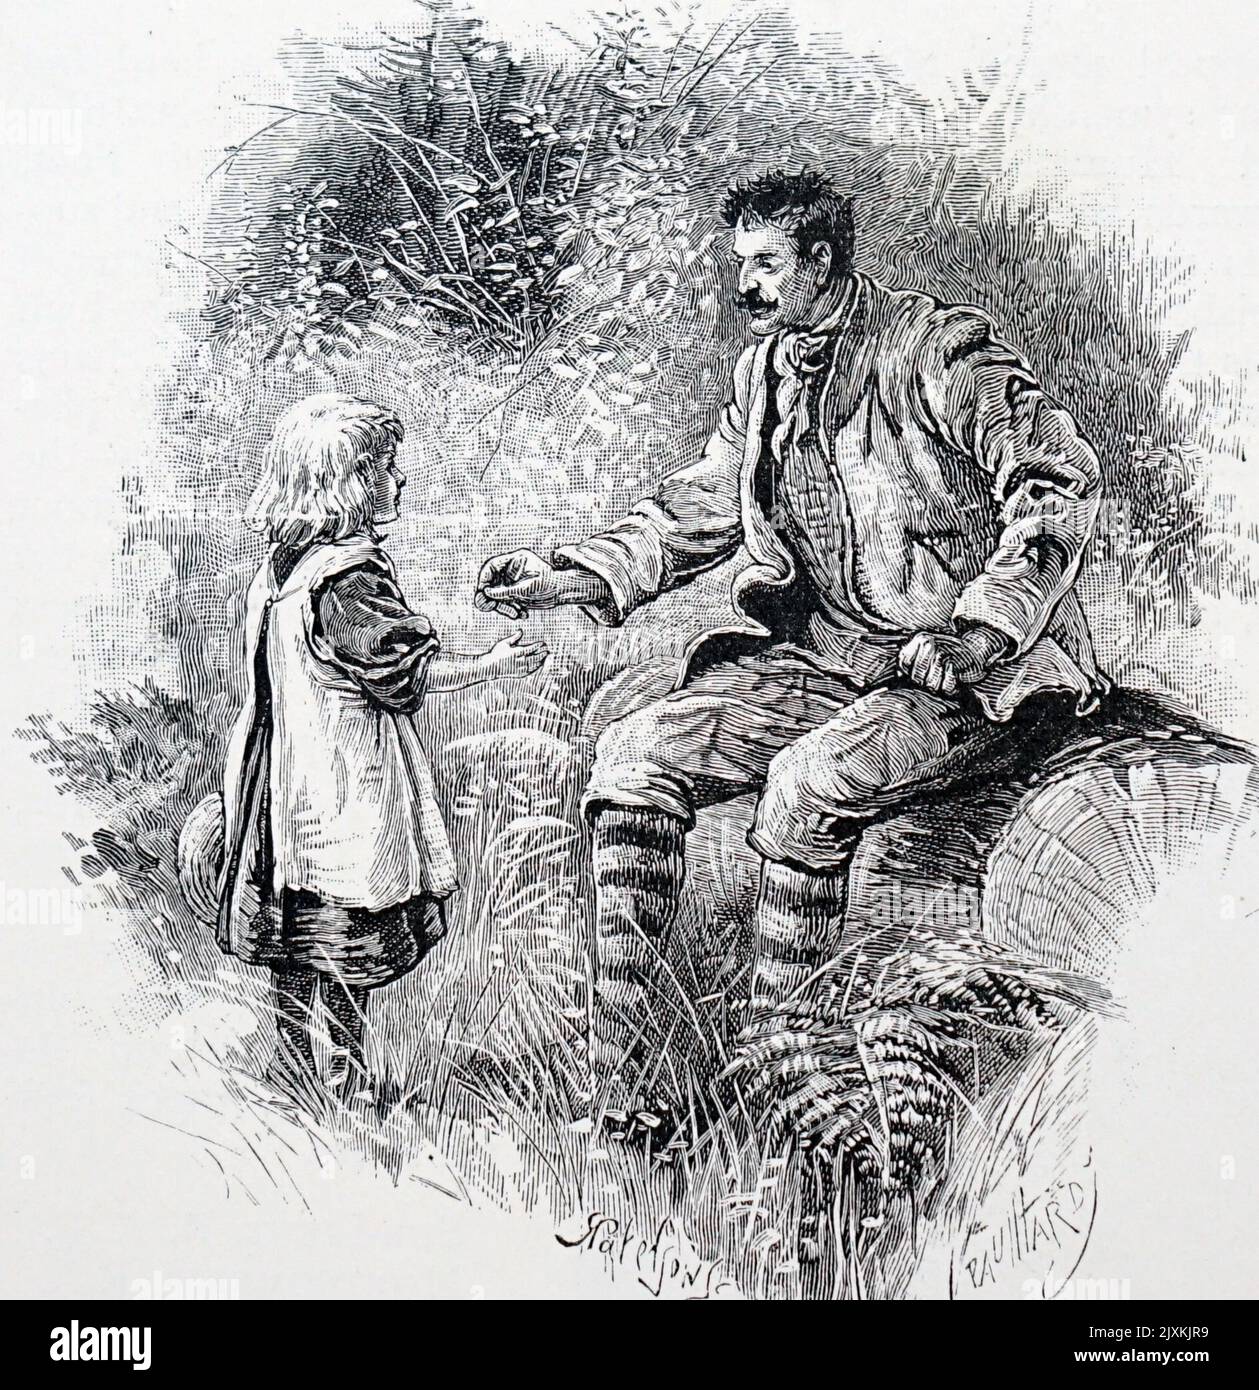 Abbildung eines entflohenen Sträflings, der ein Kind bestochen hat, um es zu ernähren. Datiert aus dem 19.. Jahrhundert Stockfoto